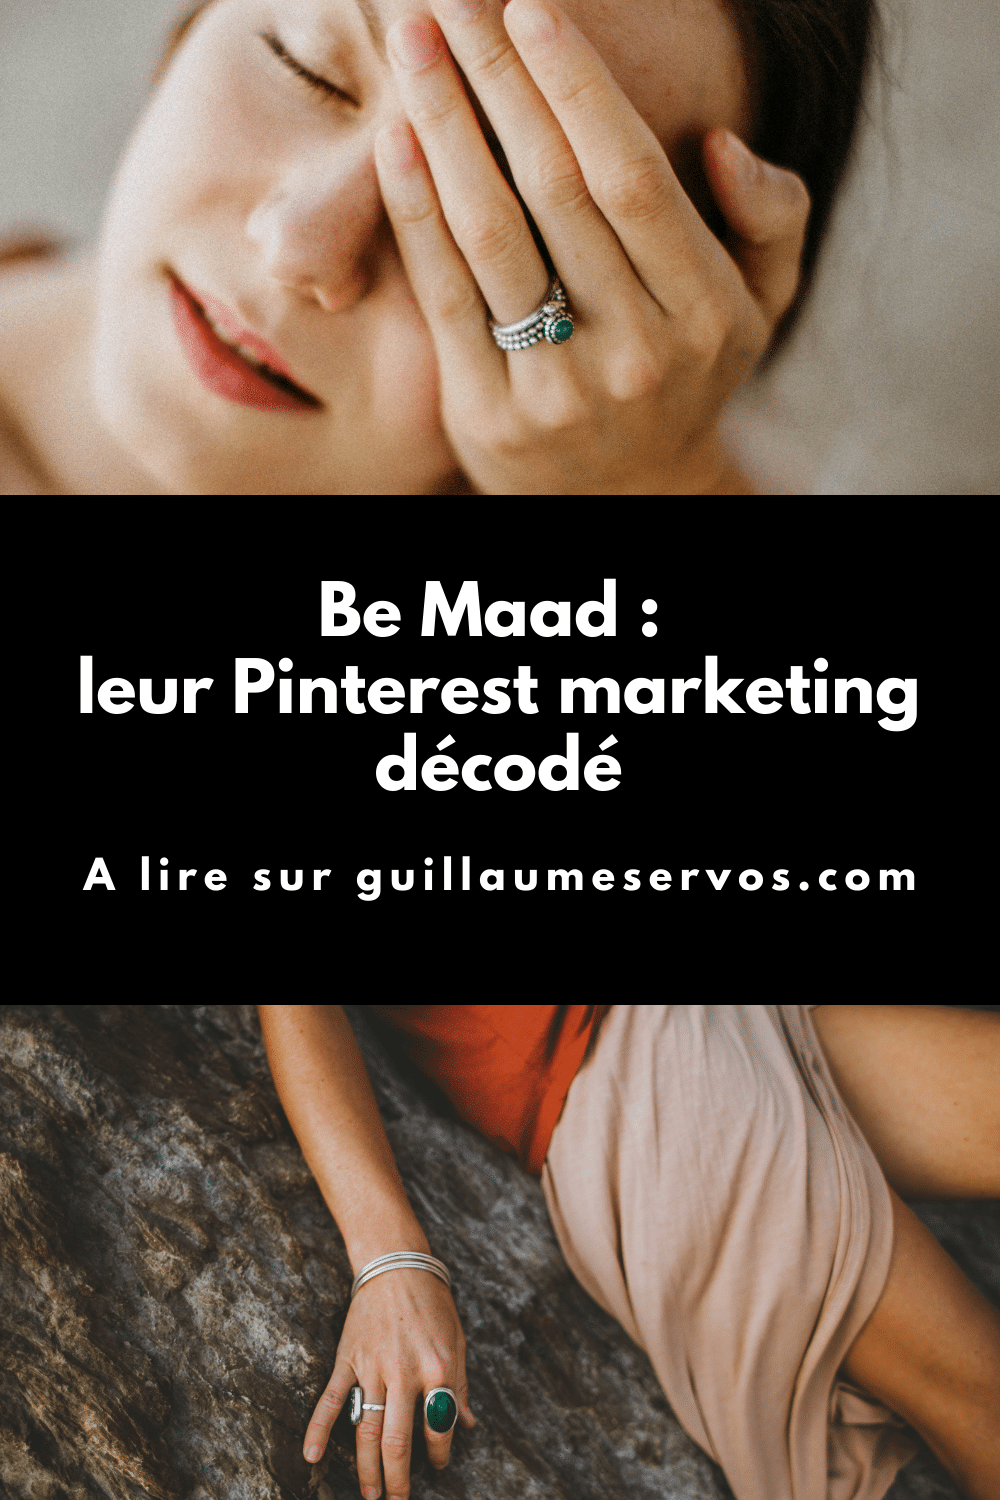 Comment Be Maad utilise Pinterest pour son business ? Je décode le Pinterest marketing de la marque de bijoux.